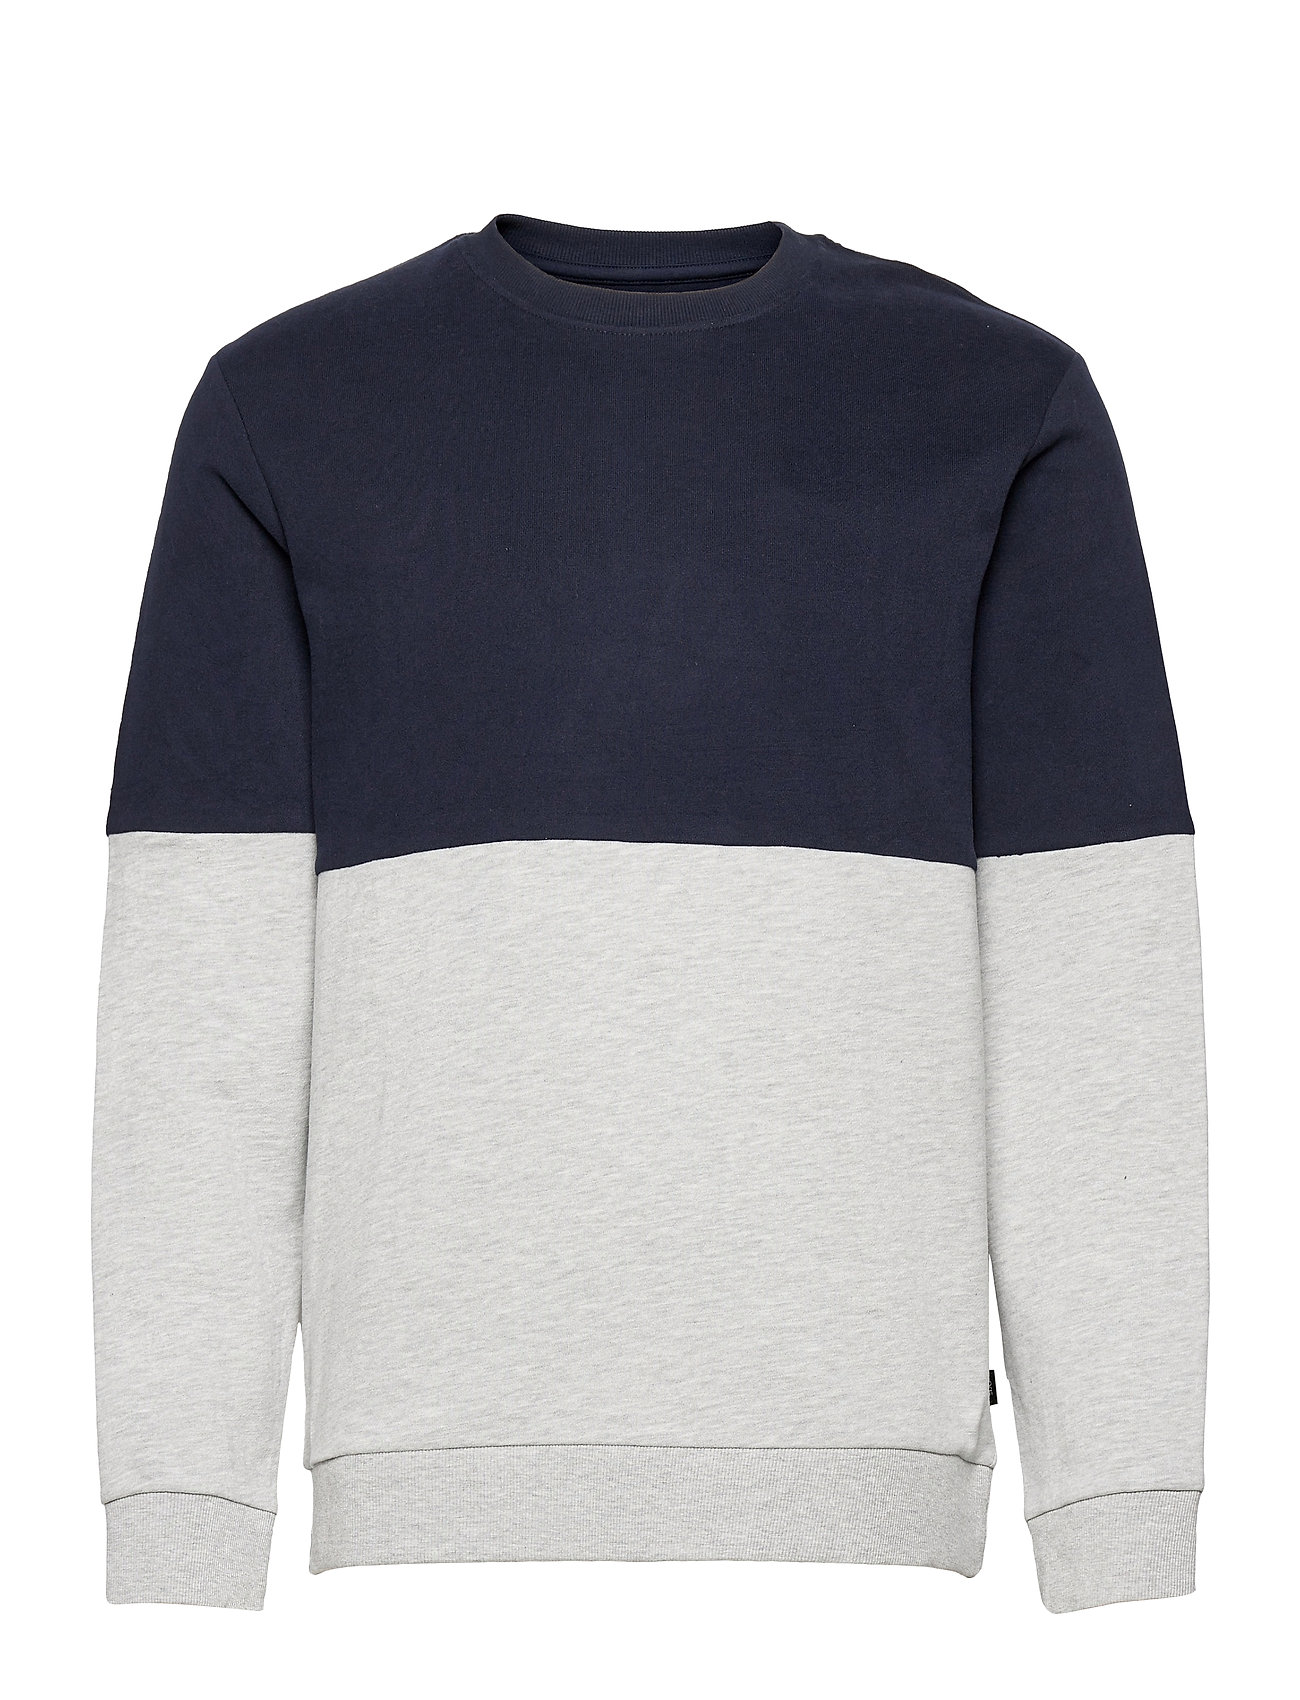 Sweatshirts Sweatshirt Trøje Blå By Esprit sweatshirts fra Esprit til i - Pashion.dk